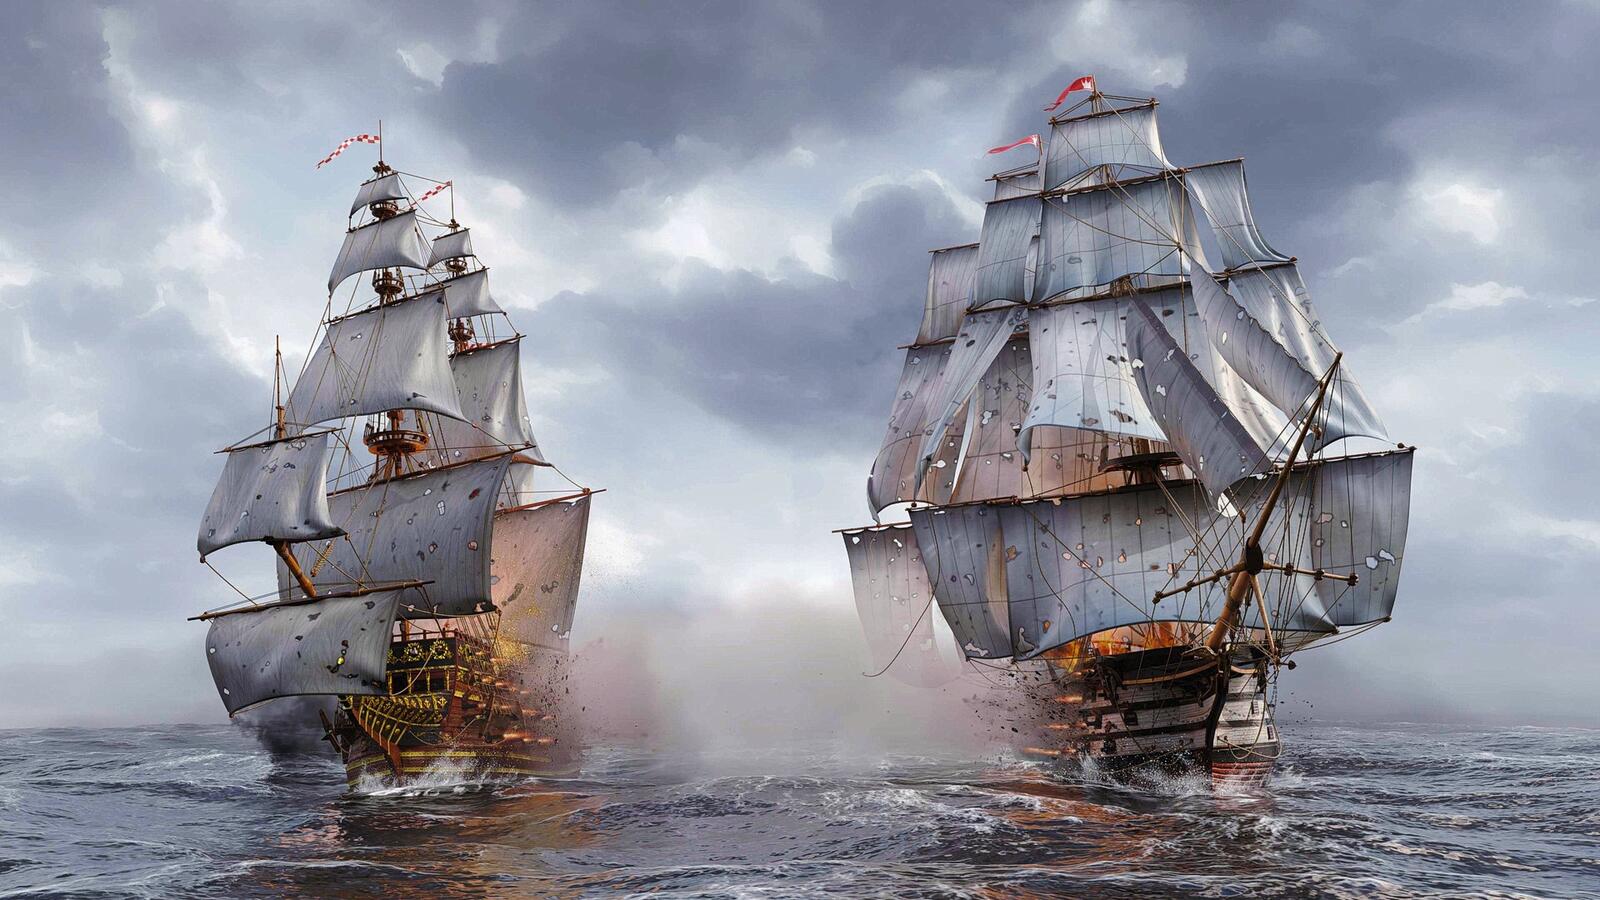 Бесплатное фото Морской бой с большими пиратскими кораблями